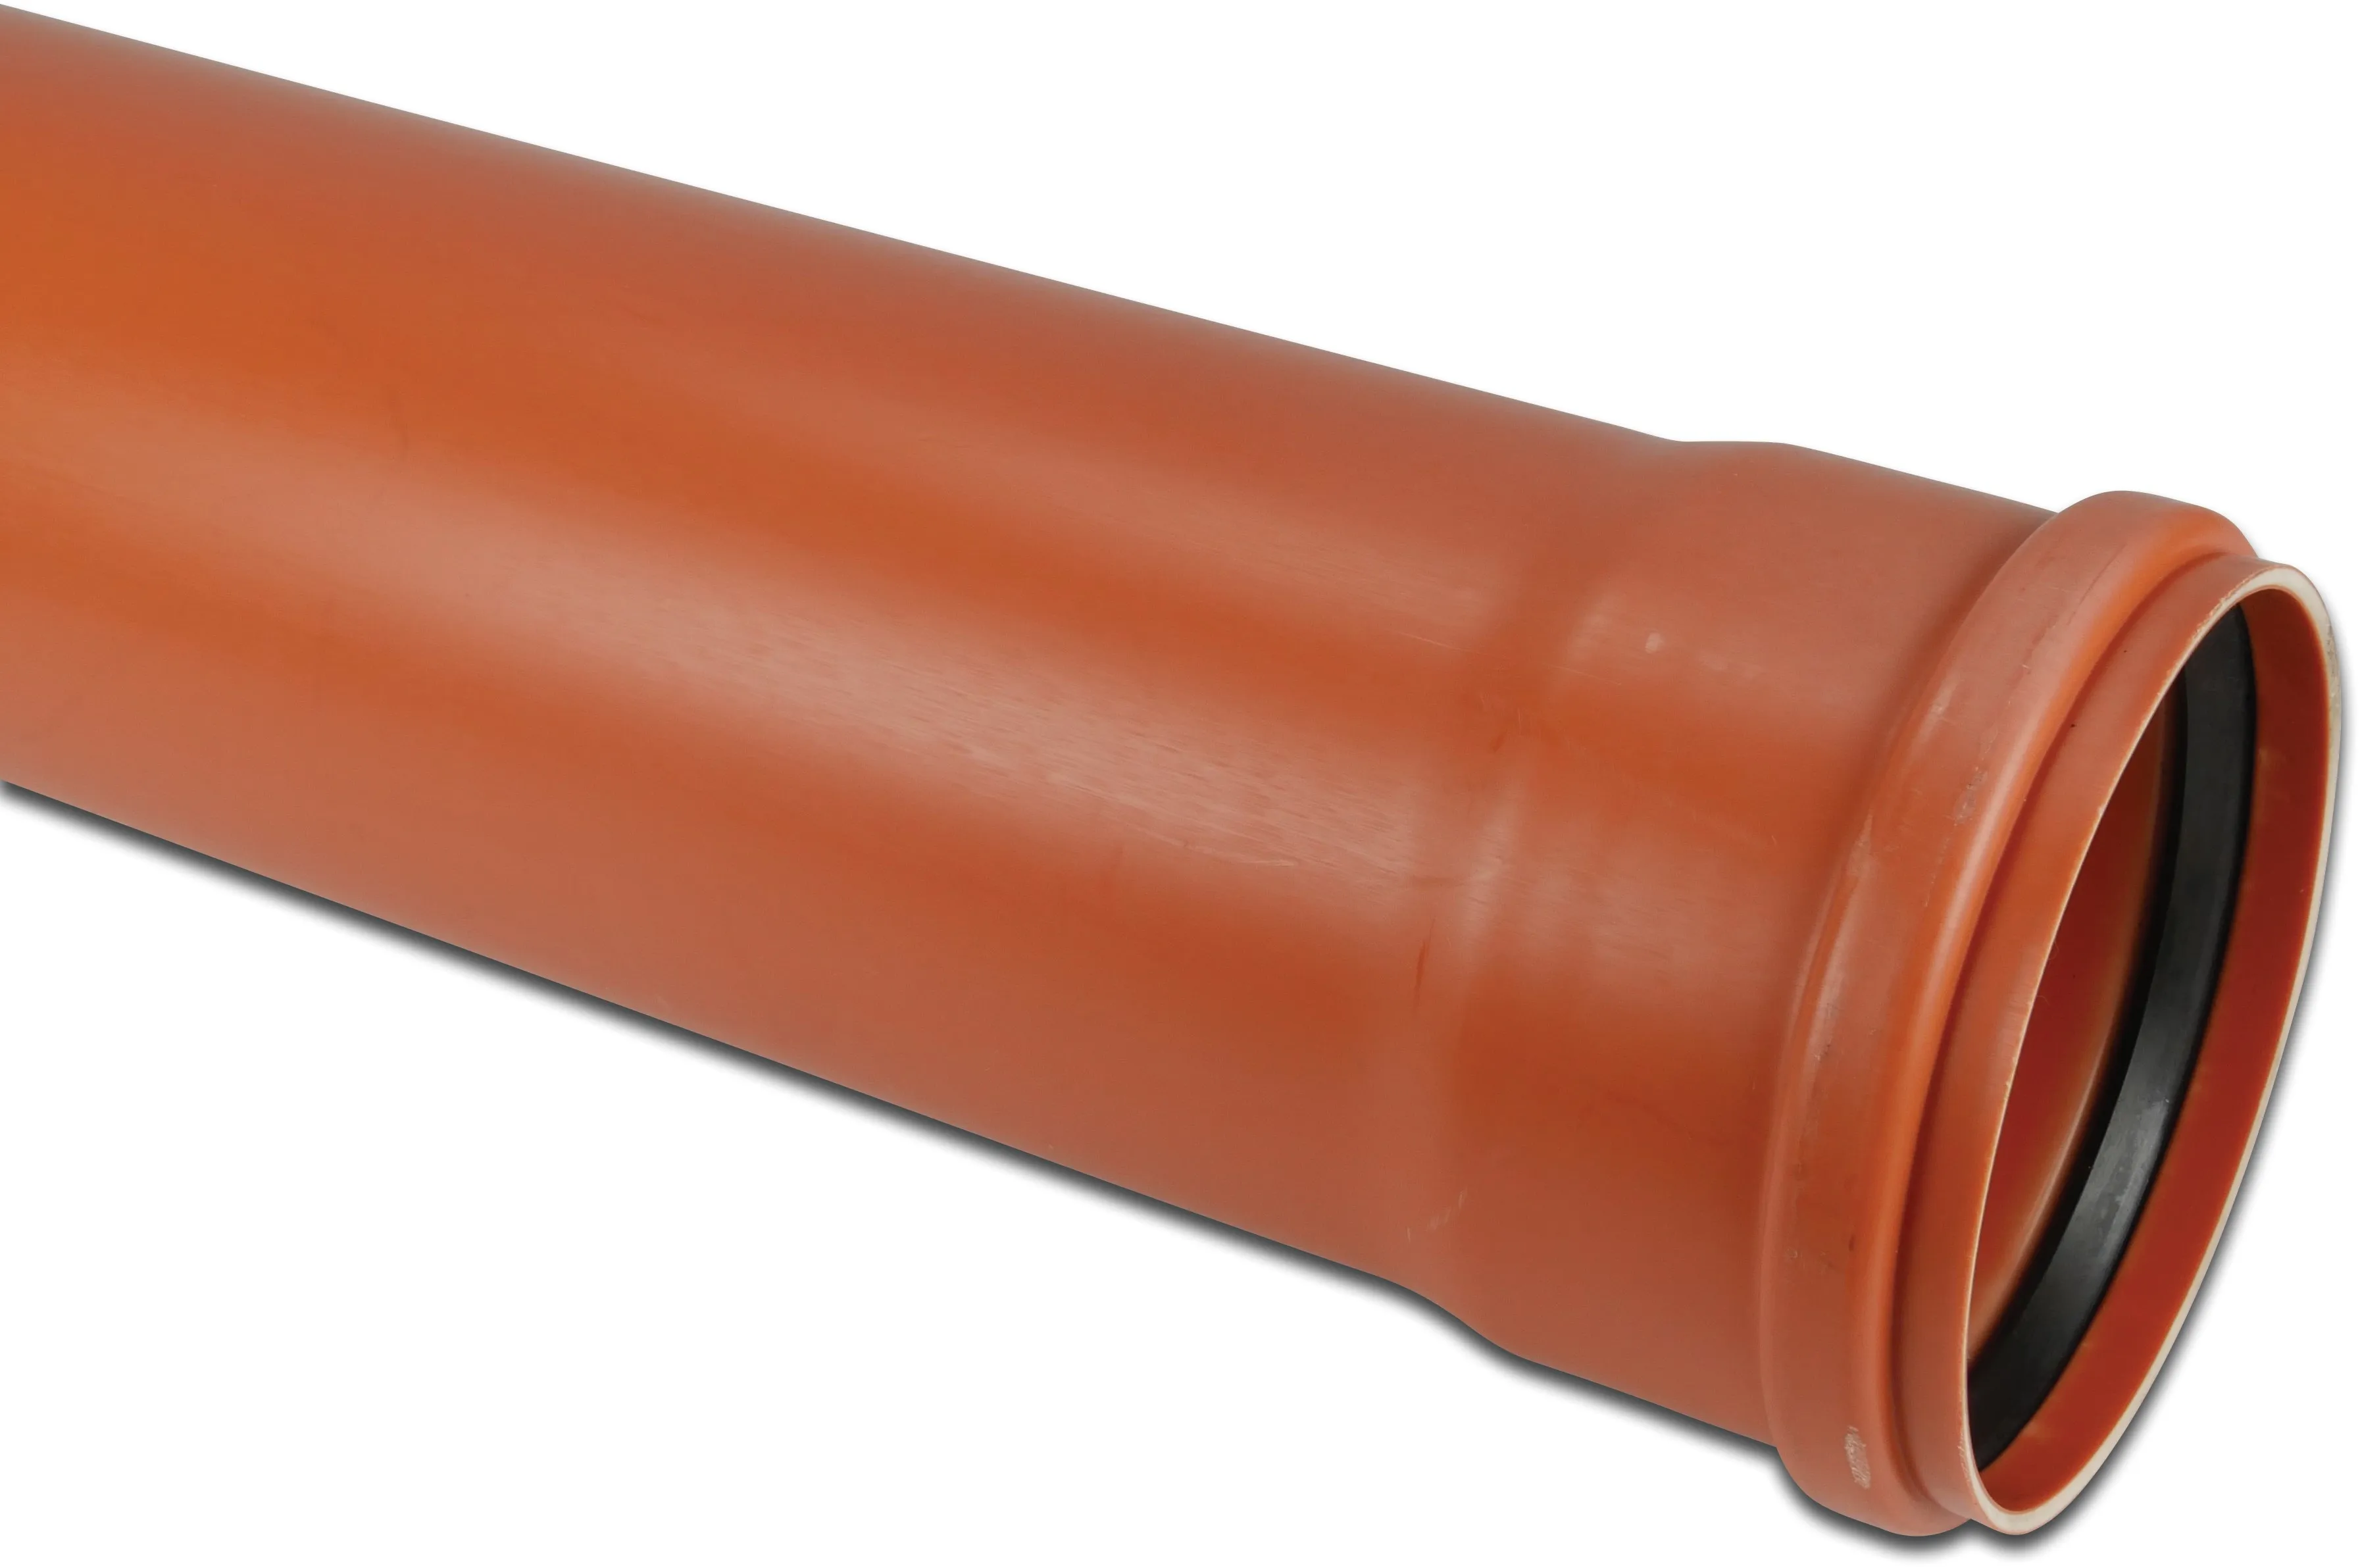 Abflussrohr PVC-U 110 mm x 3,2 mm SN4 Steckmuffe x Glatt Rostbraun 0,5m